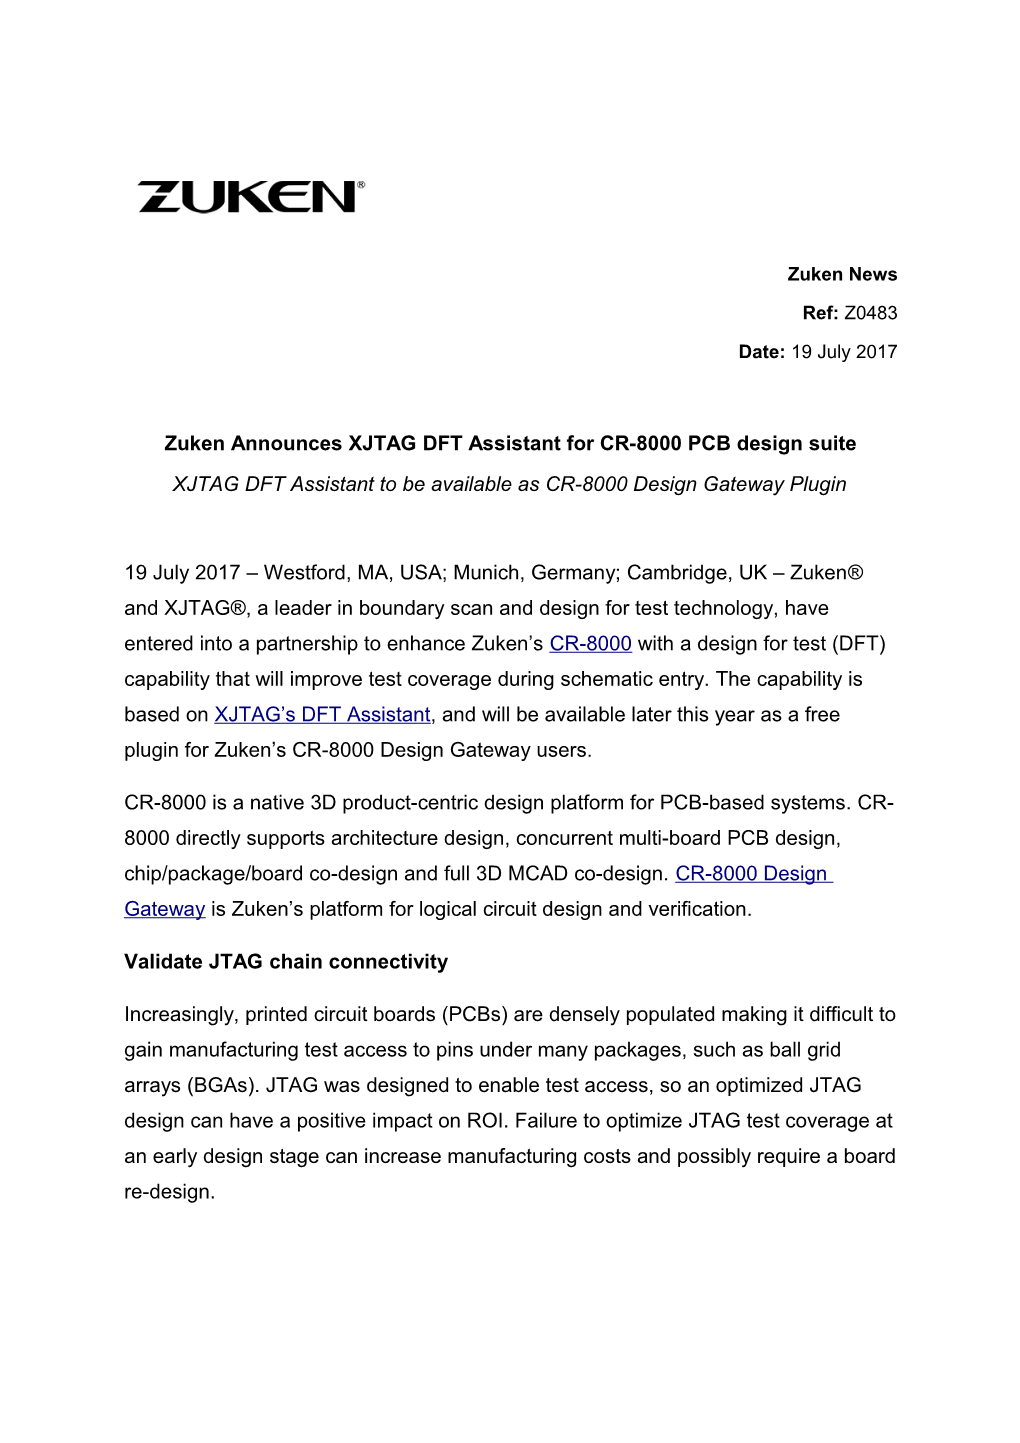 Zuken Announces XJTAG DFT Assistant for CR-8000 PCB Design Suite